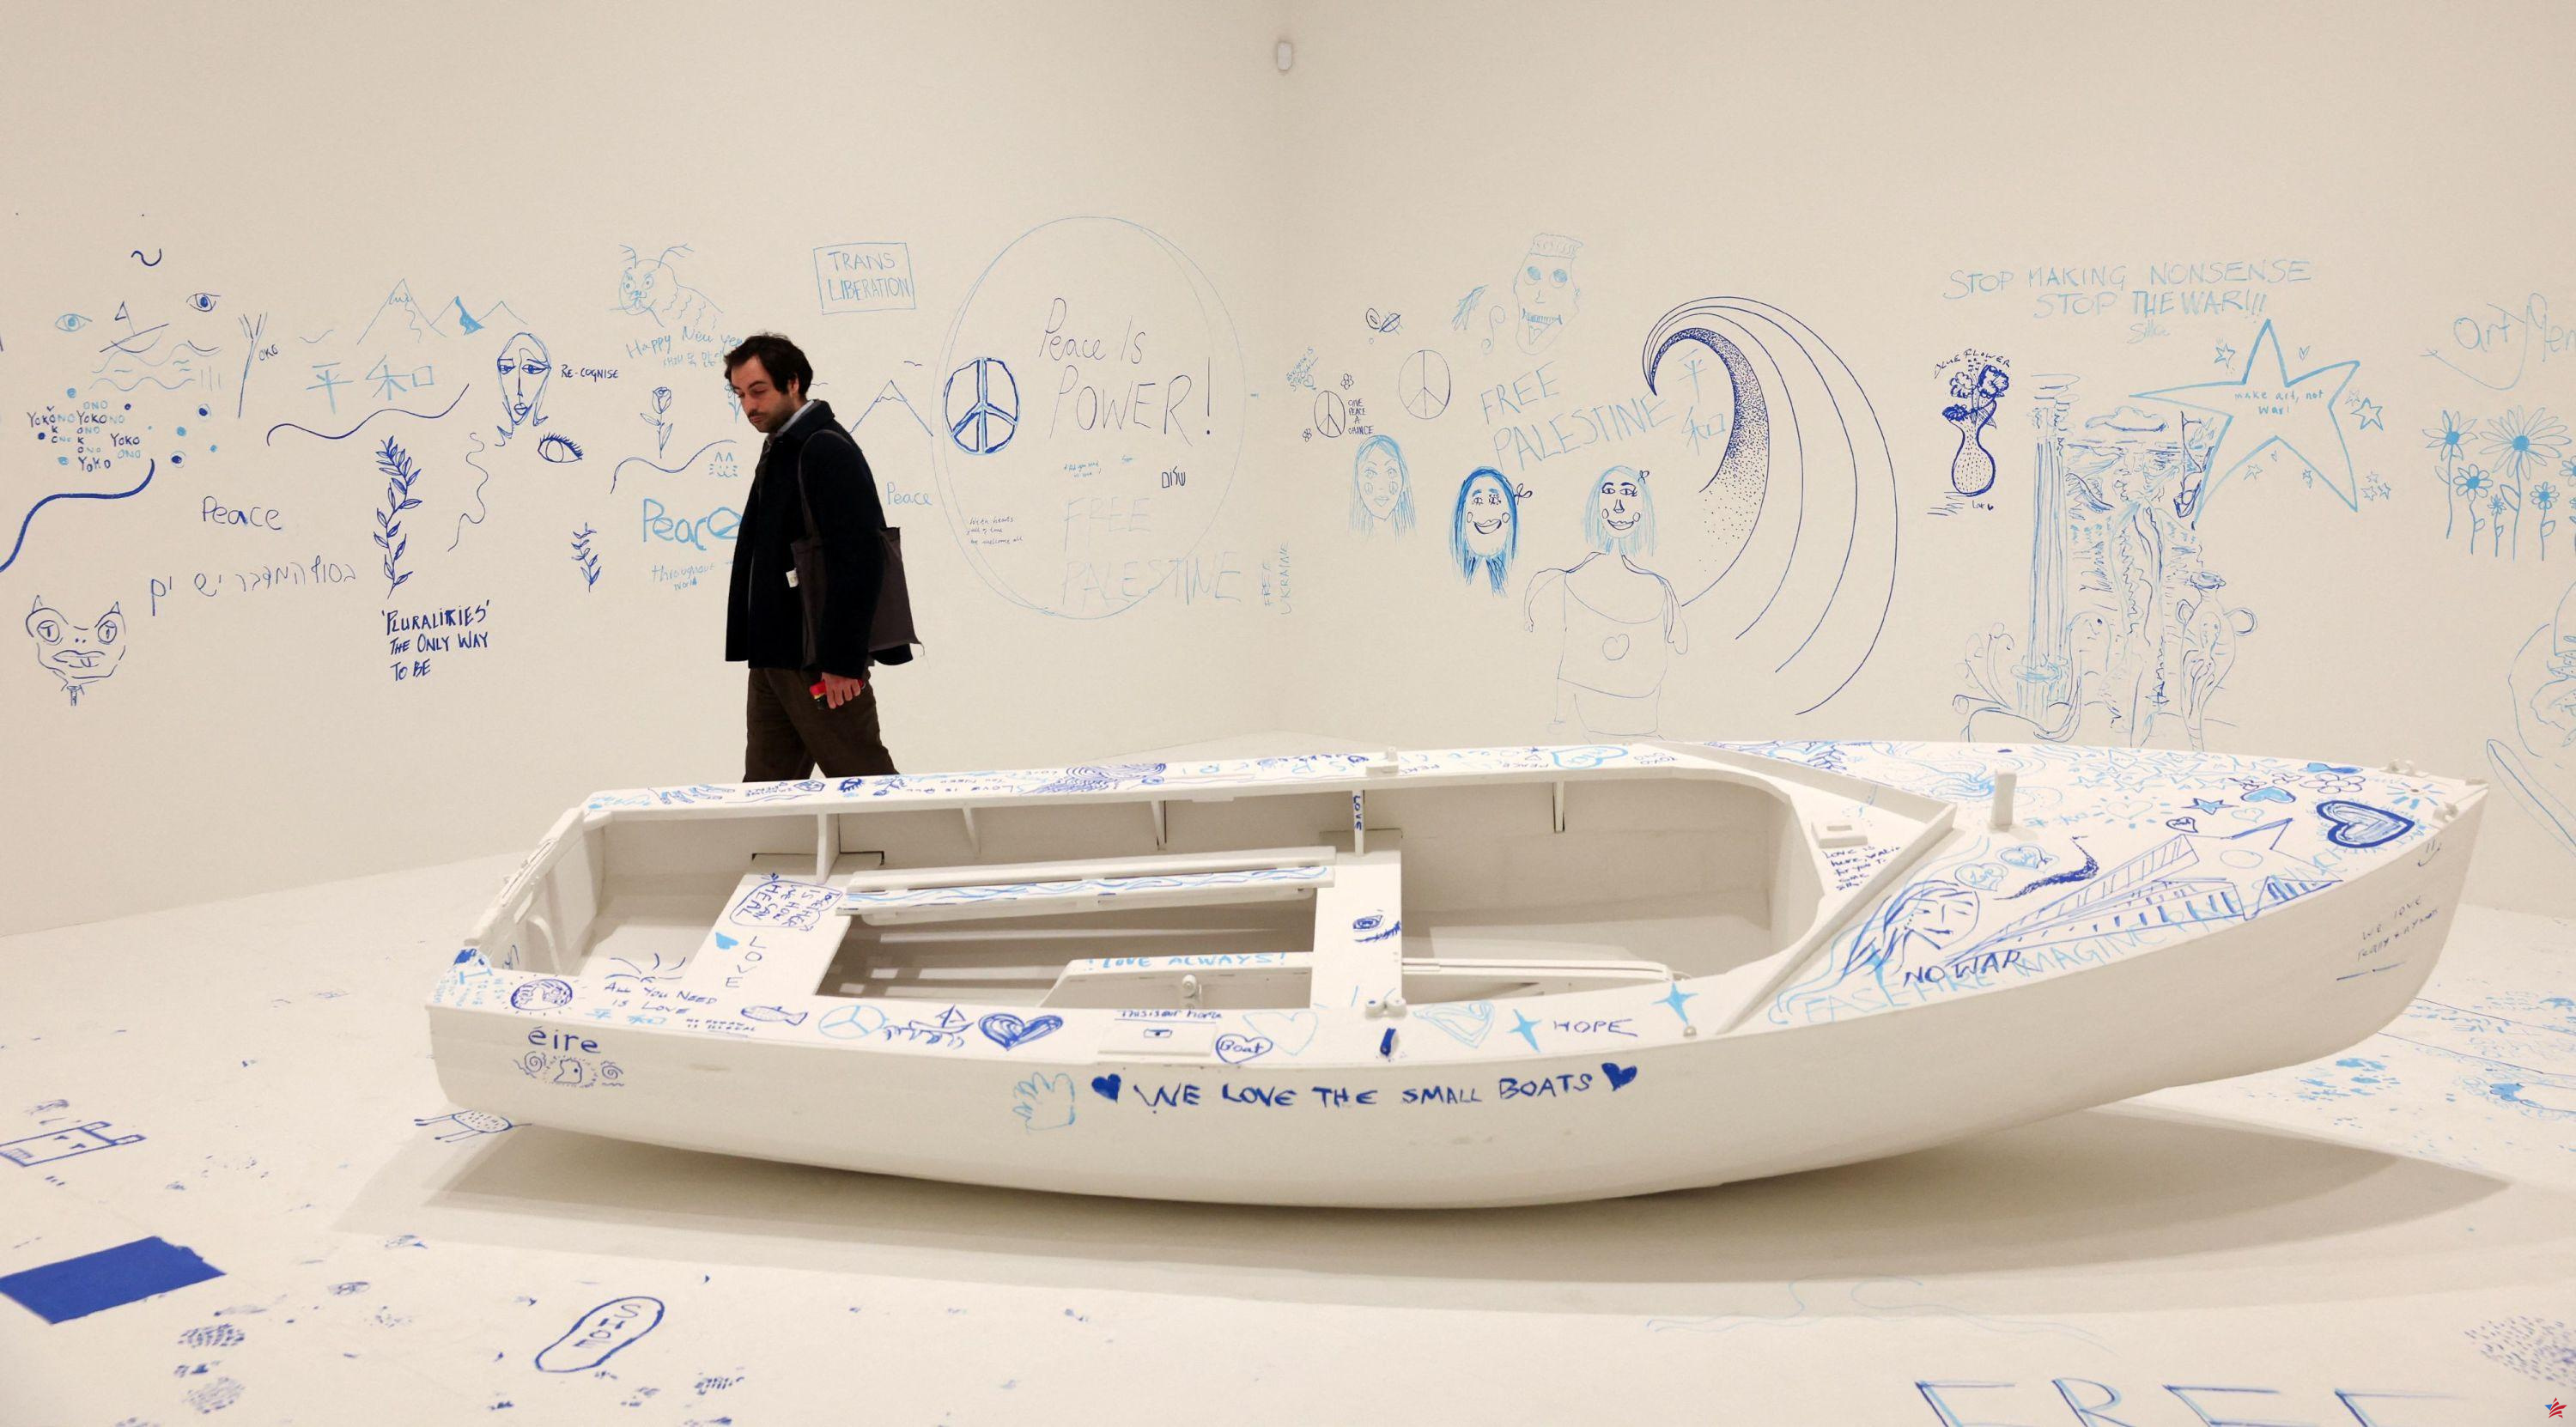 La obra de Yoko Ono, “la artista desconocida más famosa del mundo” expuesta en Londres